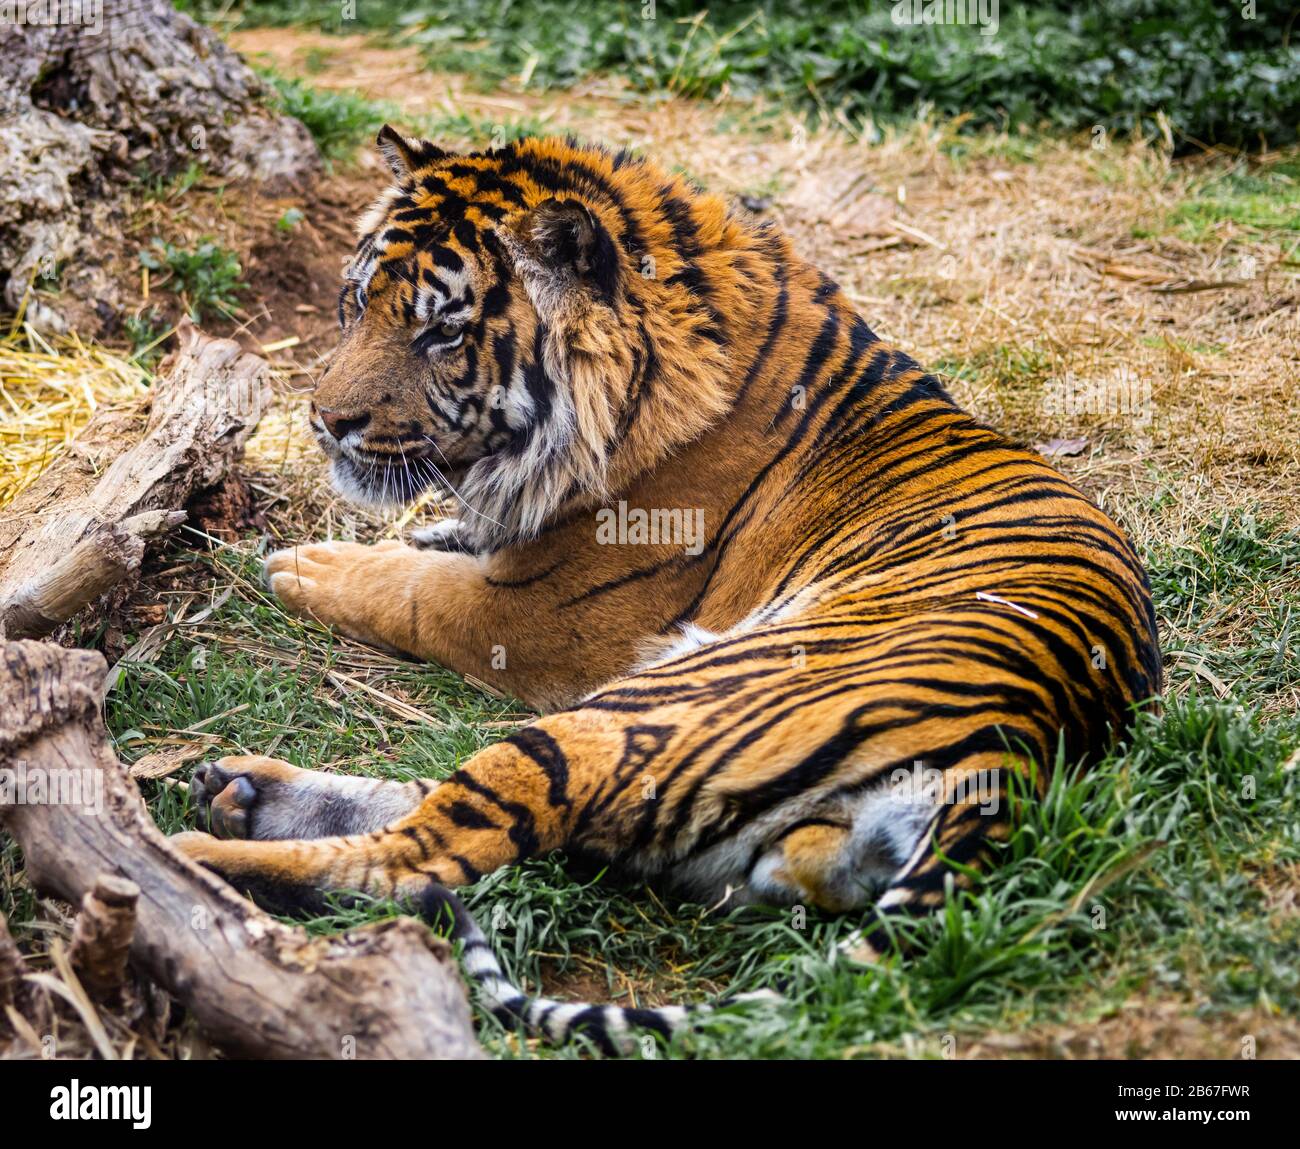 Un tigre de Sumatran regardant attentivement quelque chose avec la fourrure d'orange. Banque D'Images